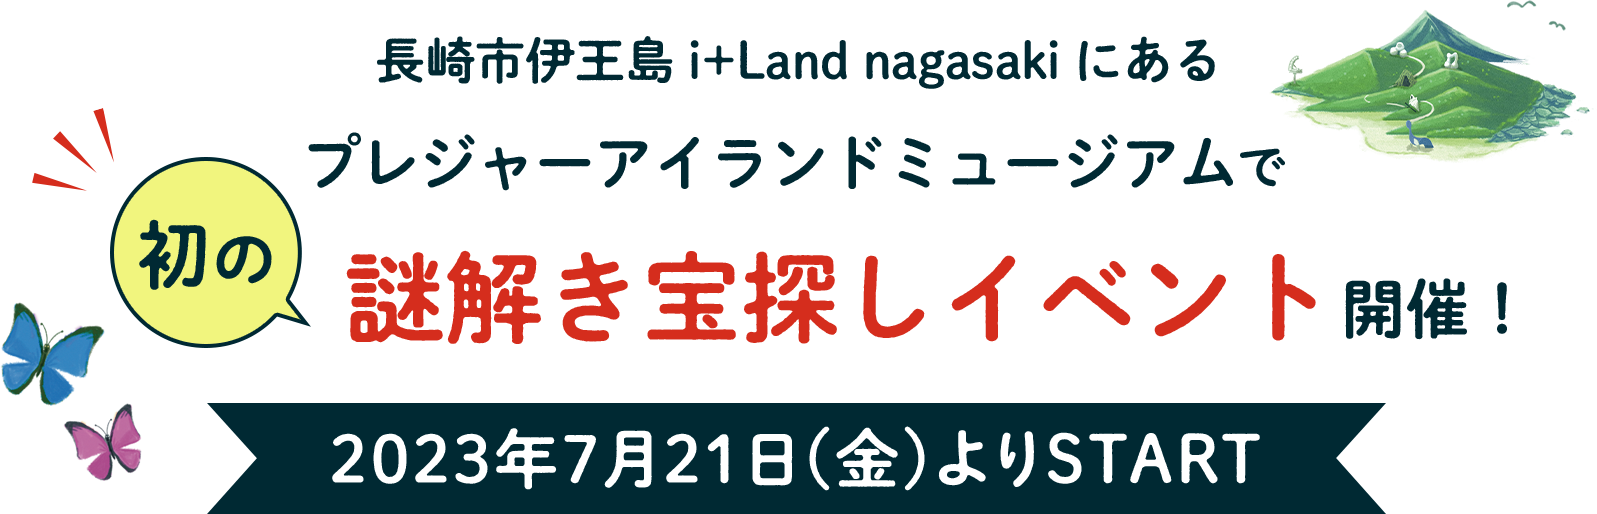 長崎市伊王島i+Land nagasakiにあるプレジャーアイランドミュージアムで初の謎解き宝探しイベント開催 2023年7月21日(金)よりSTART